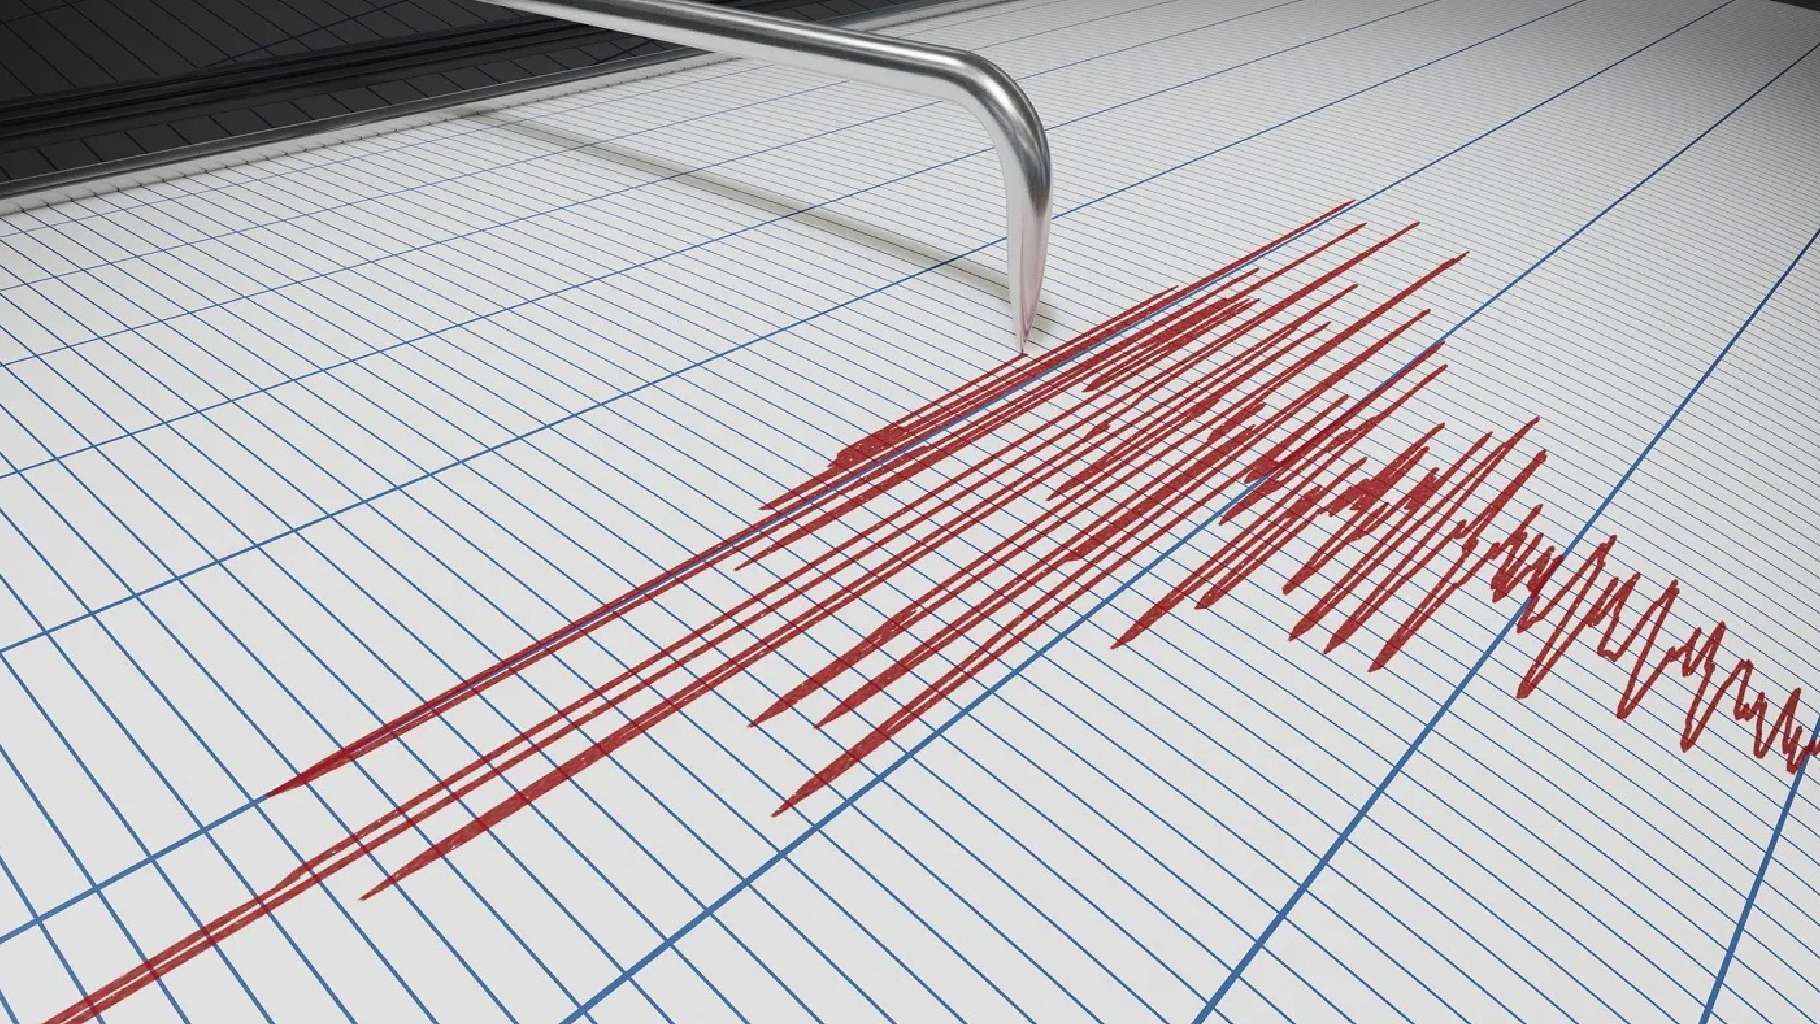 Terremoto in Friuli Venezia Giulia: più scosse in poco tempo. Tanta paura